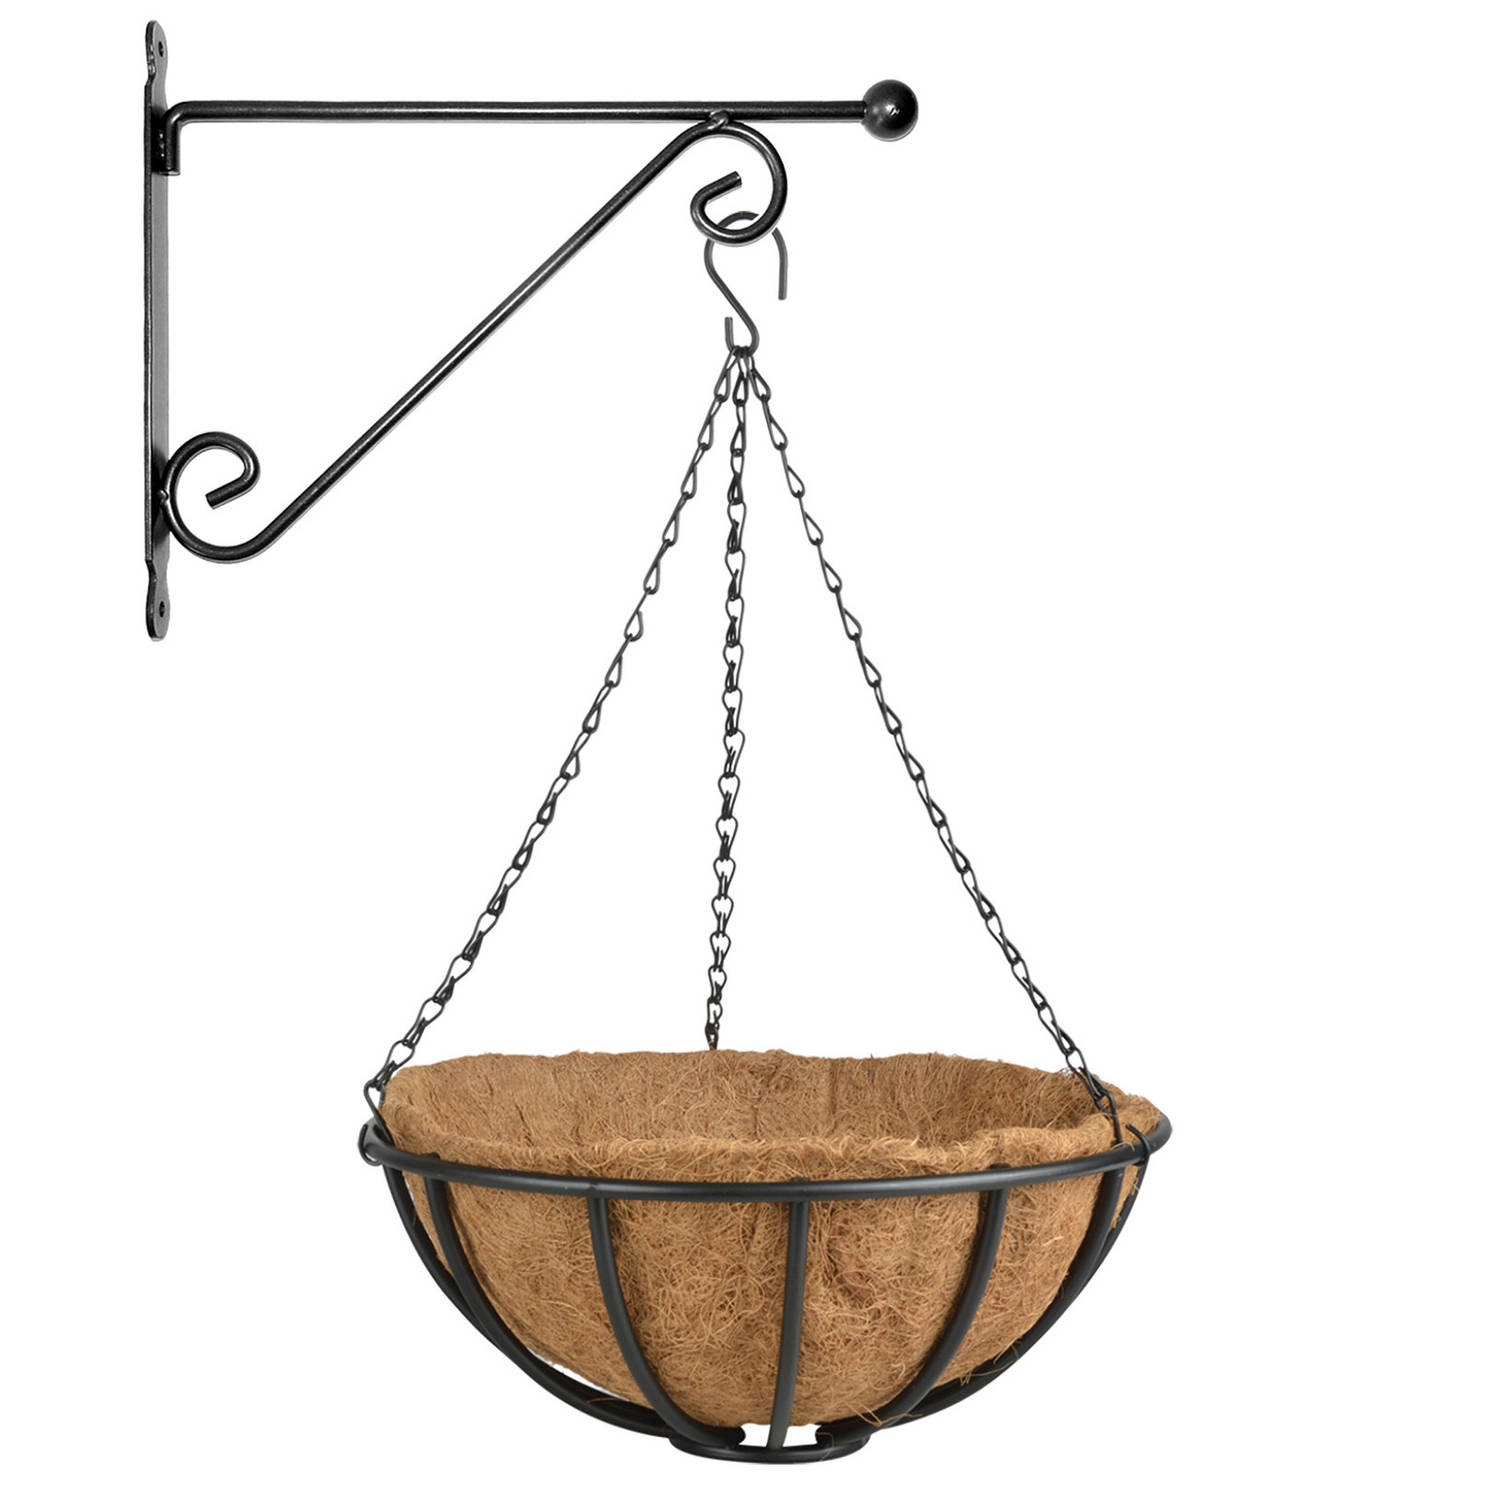 Hanging Basket 35 Cm Met Metalen Muurhaak En Kokos Inlegvel Plantenbakken